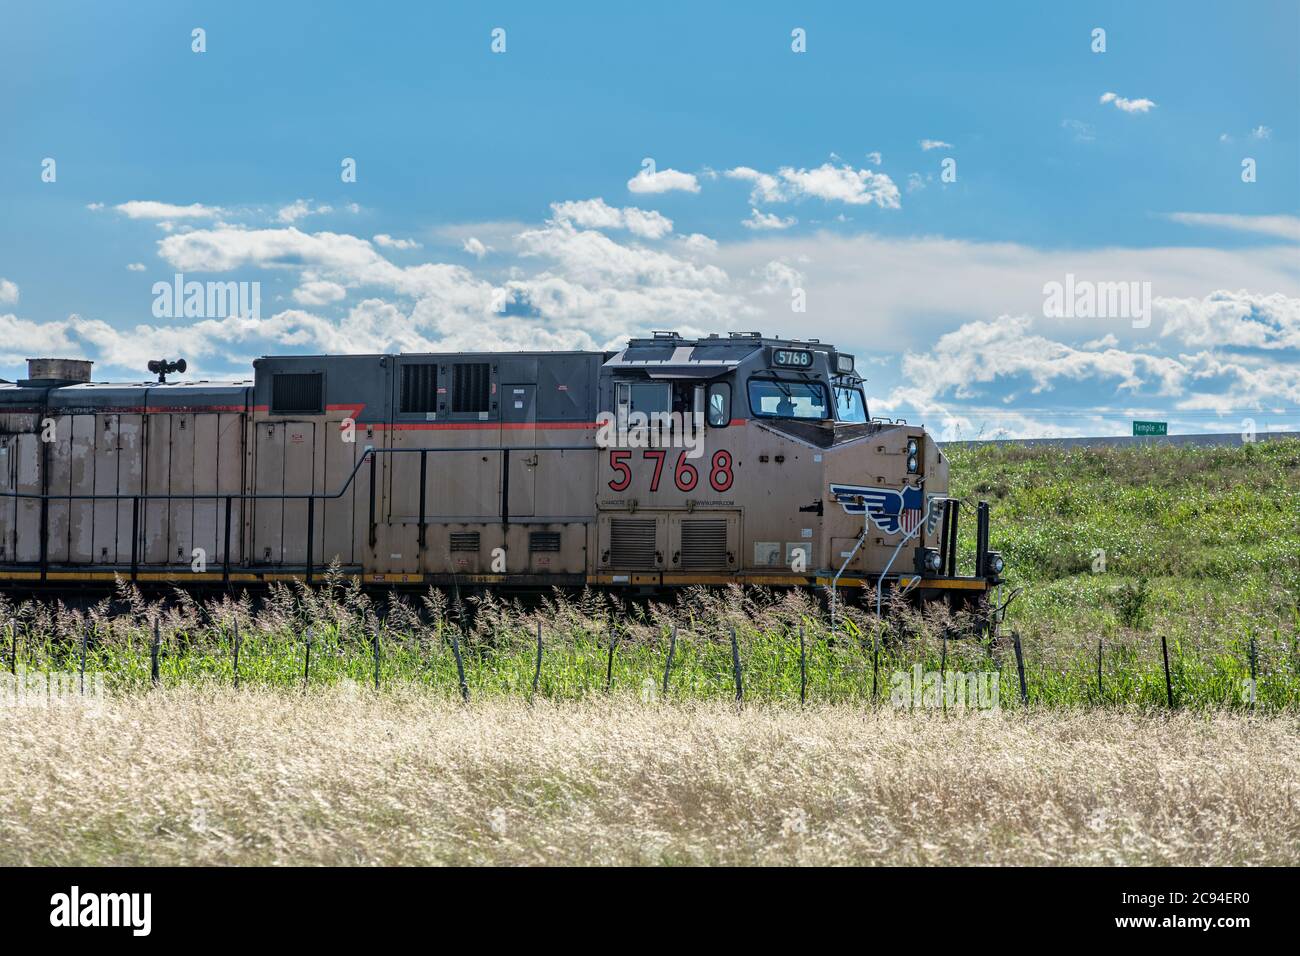 Ein Zug fährt durch einen ländlichen Teil von Texas und zieht eine Flotte von Lastautos dahinter. Stockfoto